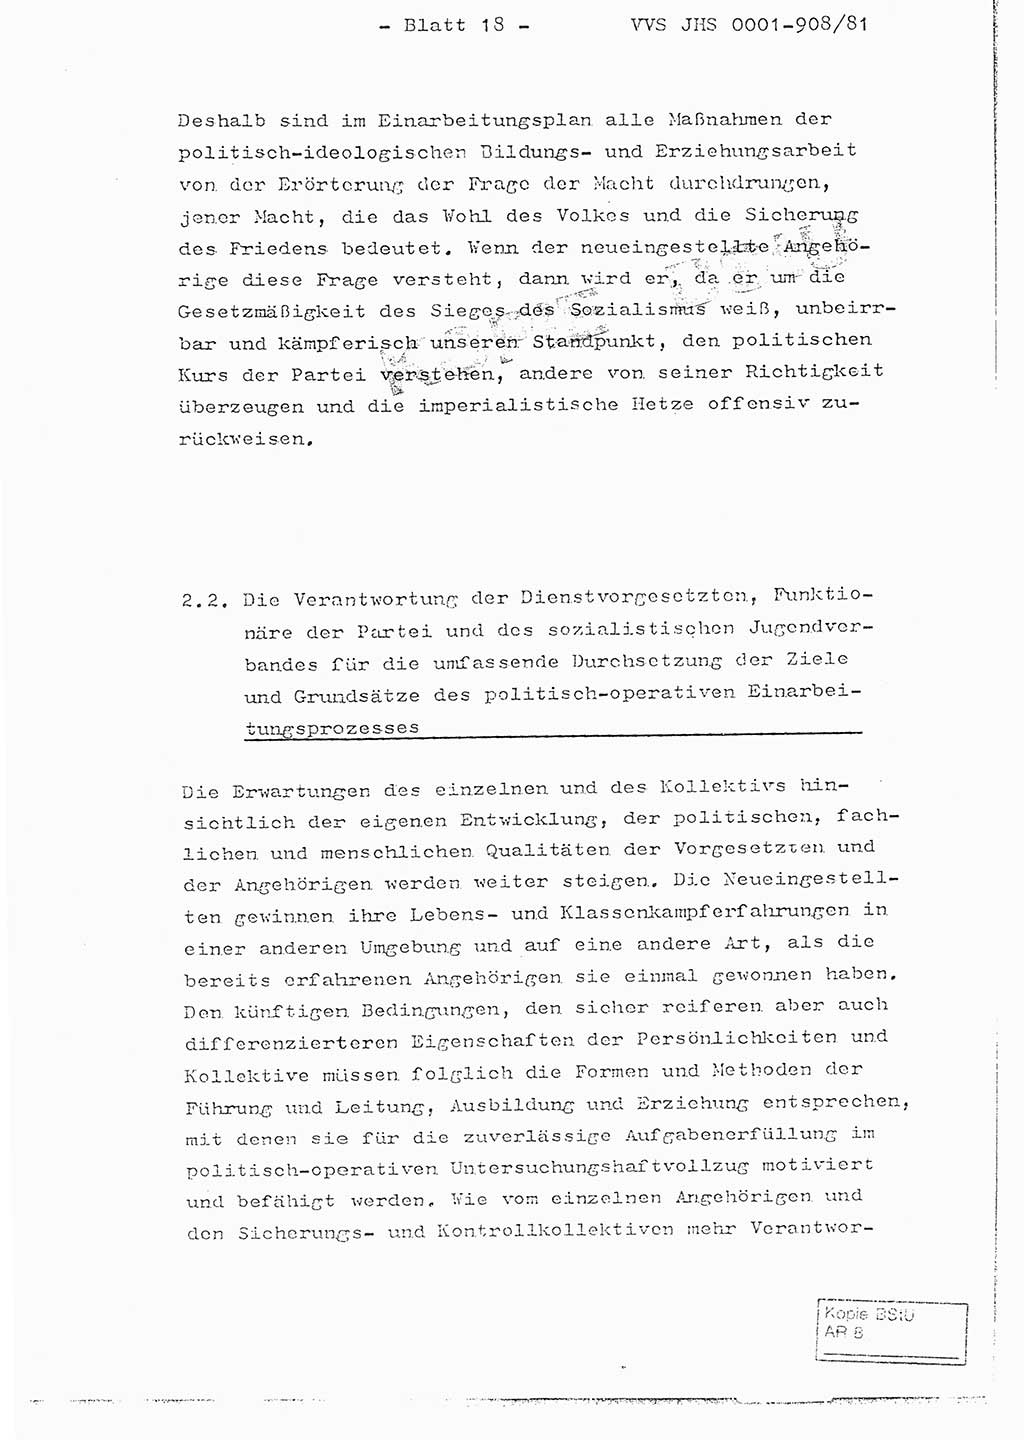 Fachschulabschlußarbeit Oberleutnant Wolfgang Wittmann (Abt. ⅩⅣ), Ministerium für Staatssicherheit (MfS) [Deutsche Demokratische Republik (DDR)], Juristische Hochschule (JHS), Vertrauliche Verschlußsache (VVS) o001-908/82, Potsdam 1982, Blatt 18 (FS-Abschl.-Arb. MfS DDR JHS VVS o001-908/82 1982, Bl. 18)